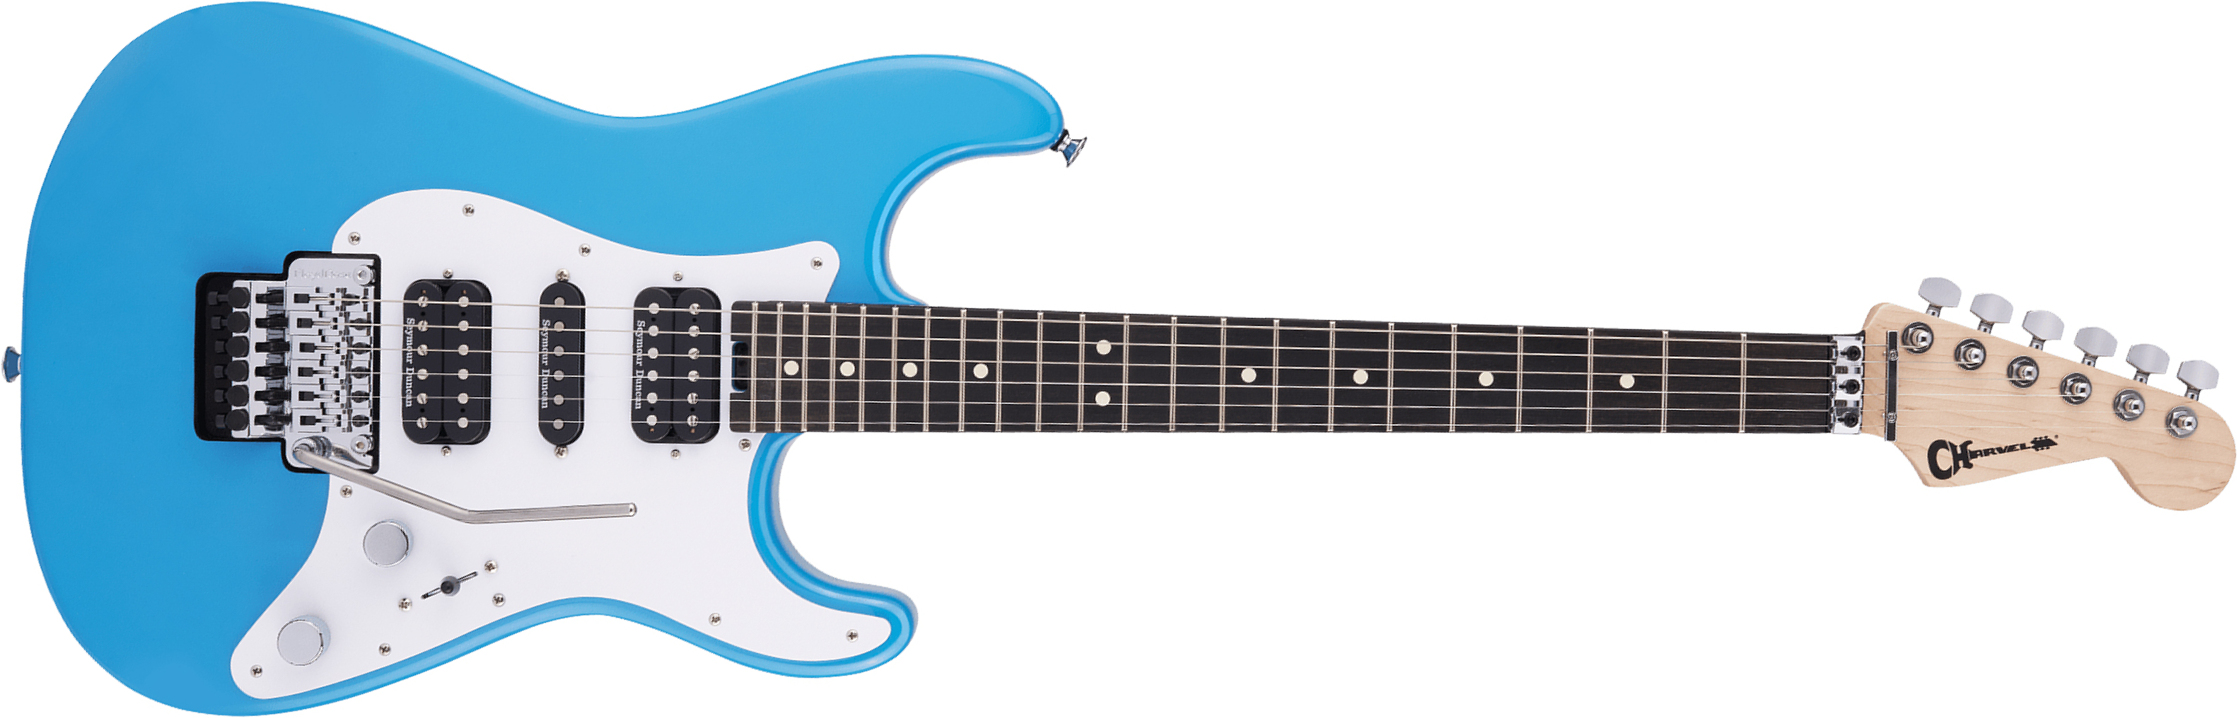 Charvel So-cal Style 1 Hsh Fr E Pro-mod Seymour Duncan Eb - Robbin's Egg Blue - Guitare Électrique Forme Str - Main picture